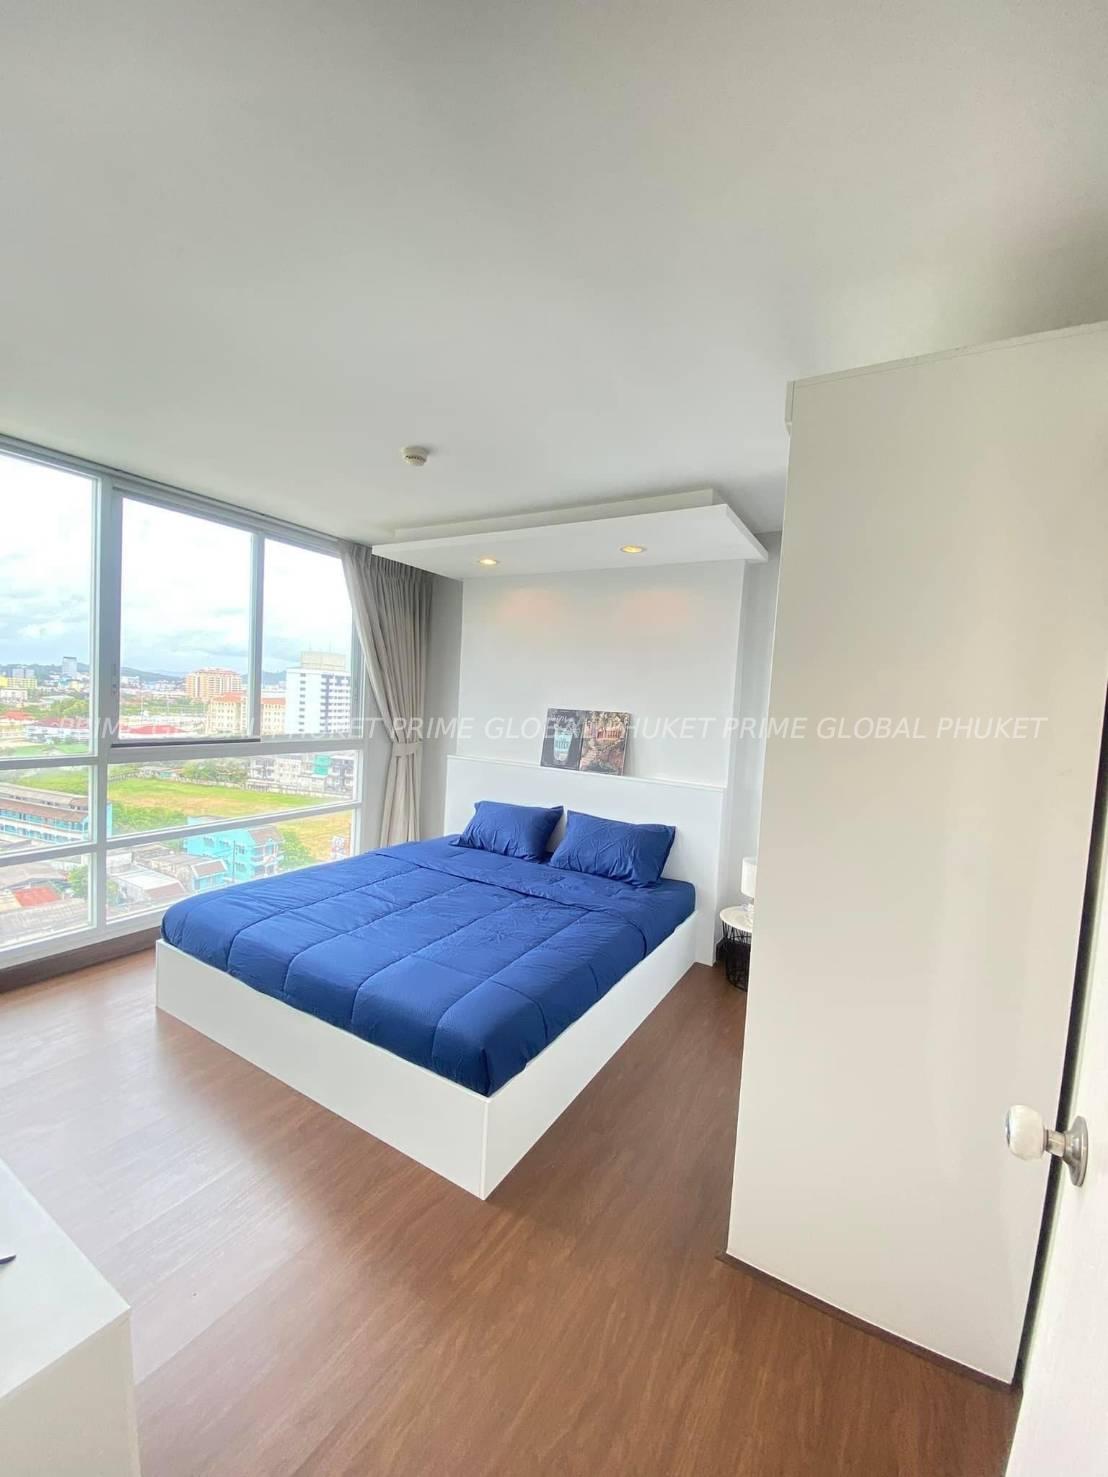 40.19 Sq.m Condominium for Rent in Phuket town